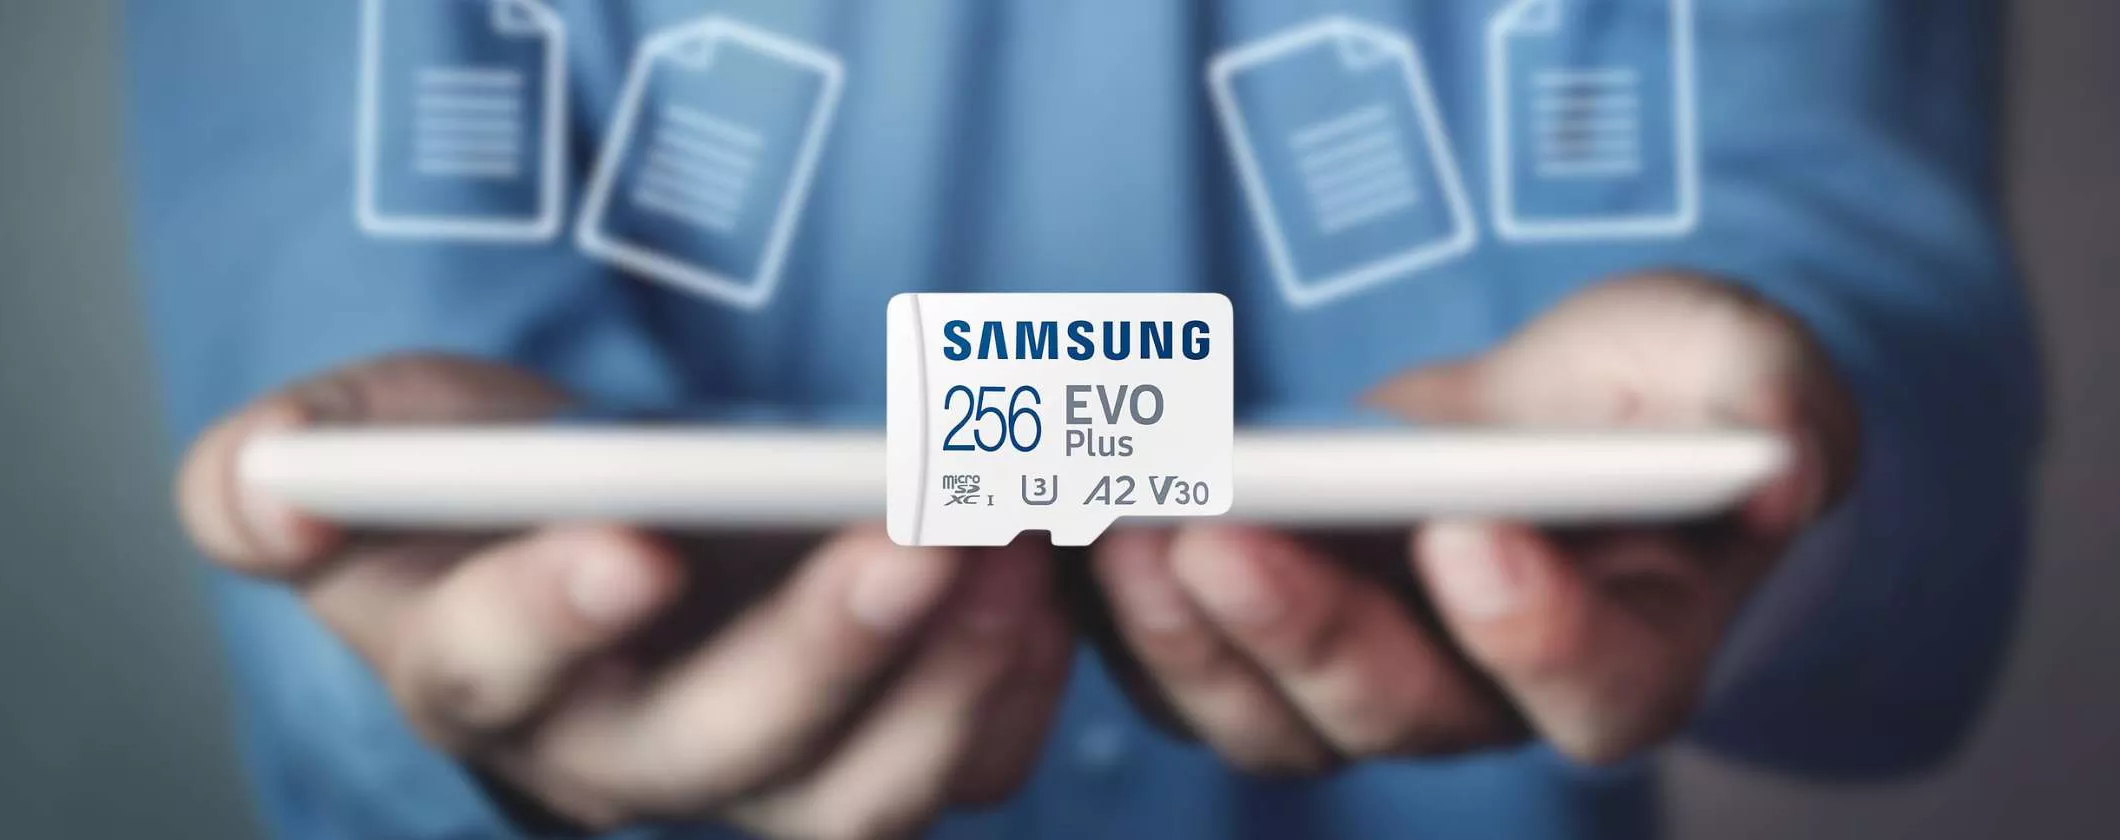 MicroSD Samsung 256GB a soli 21€: BOMBA Unieuro Solo Online